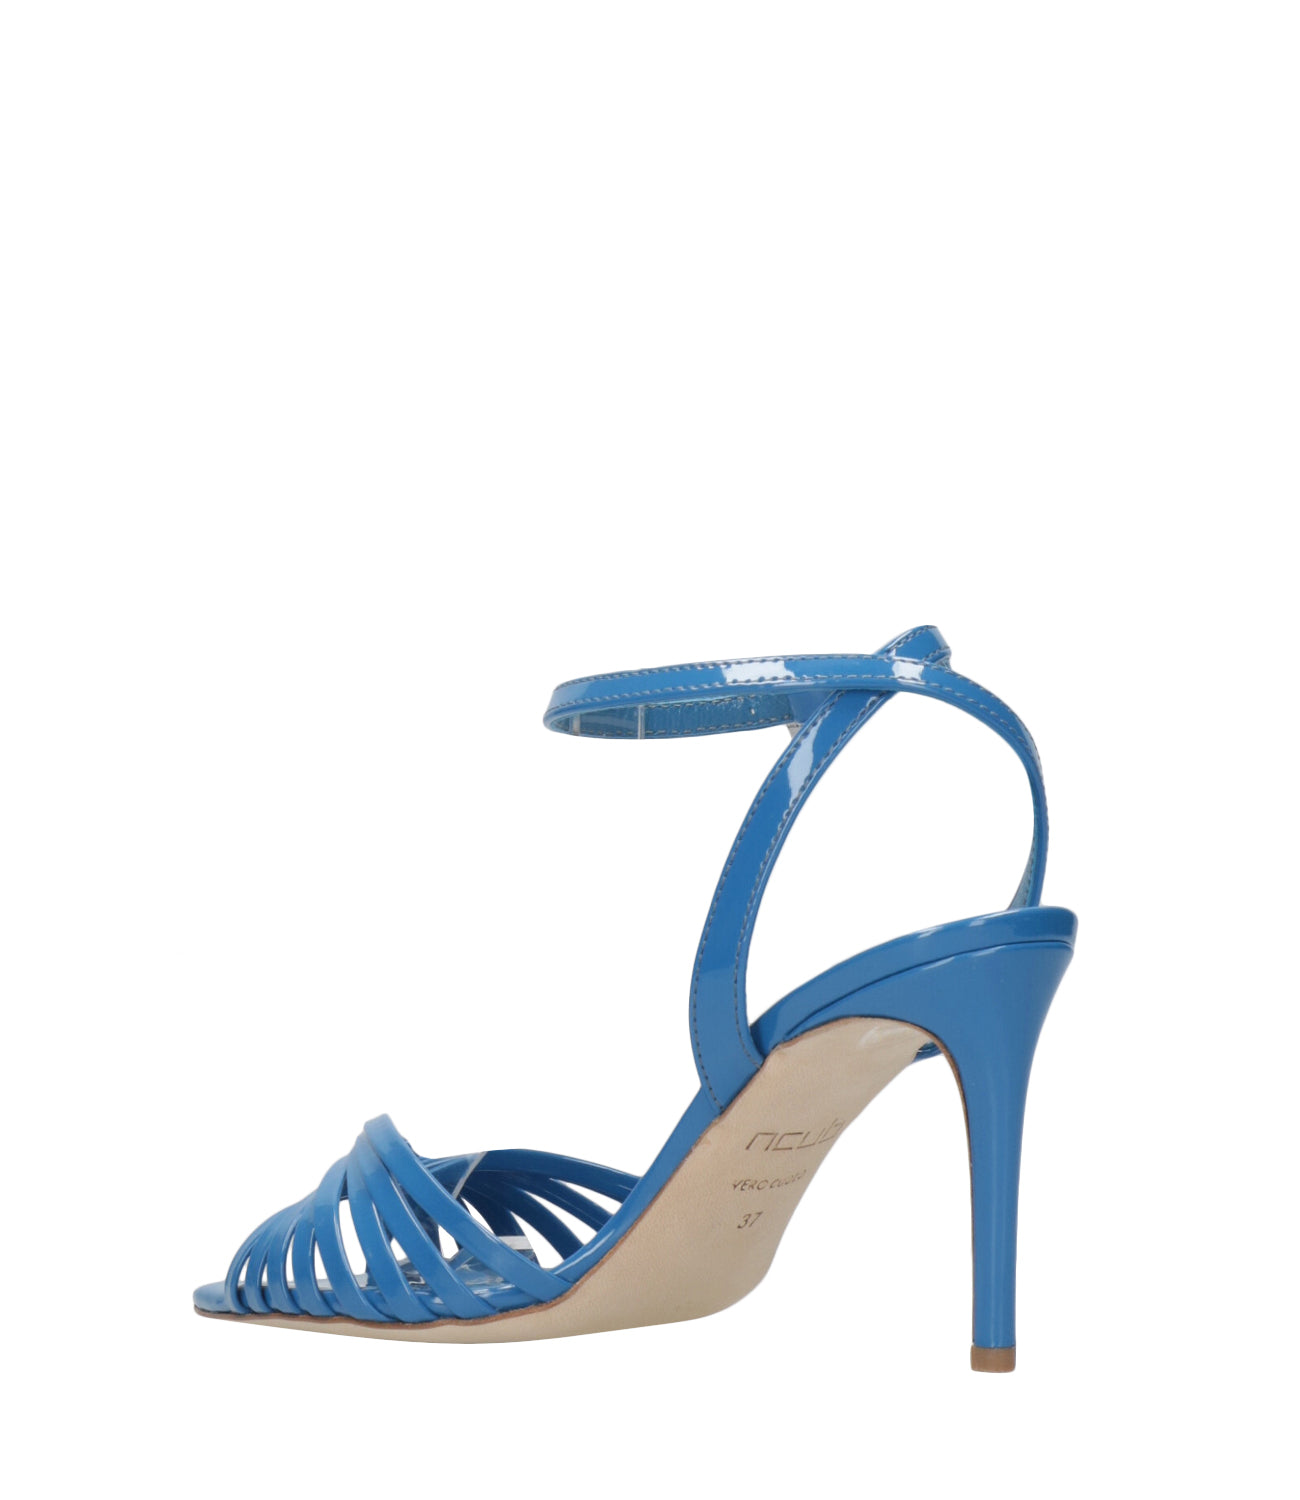 Ncub | Sandalo Bluette